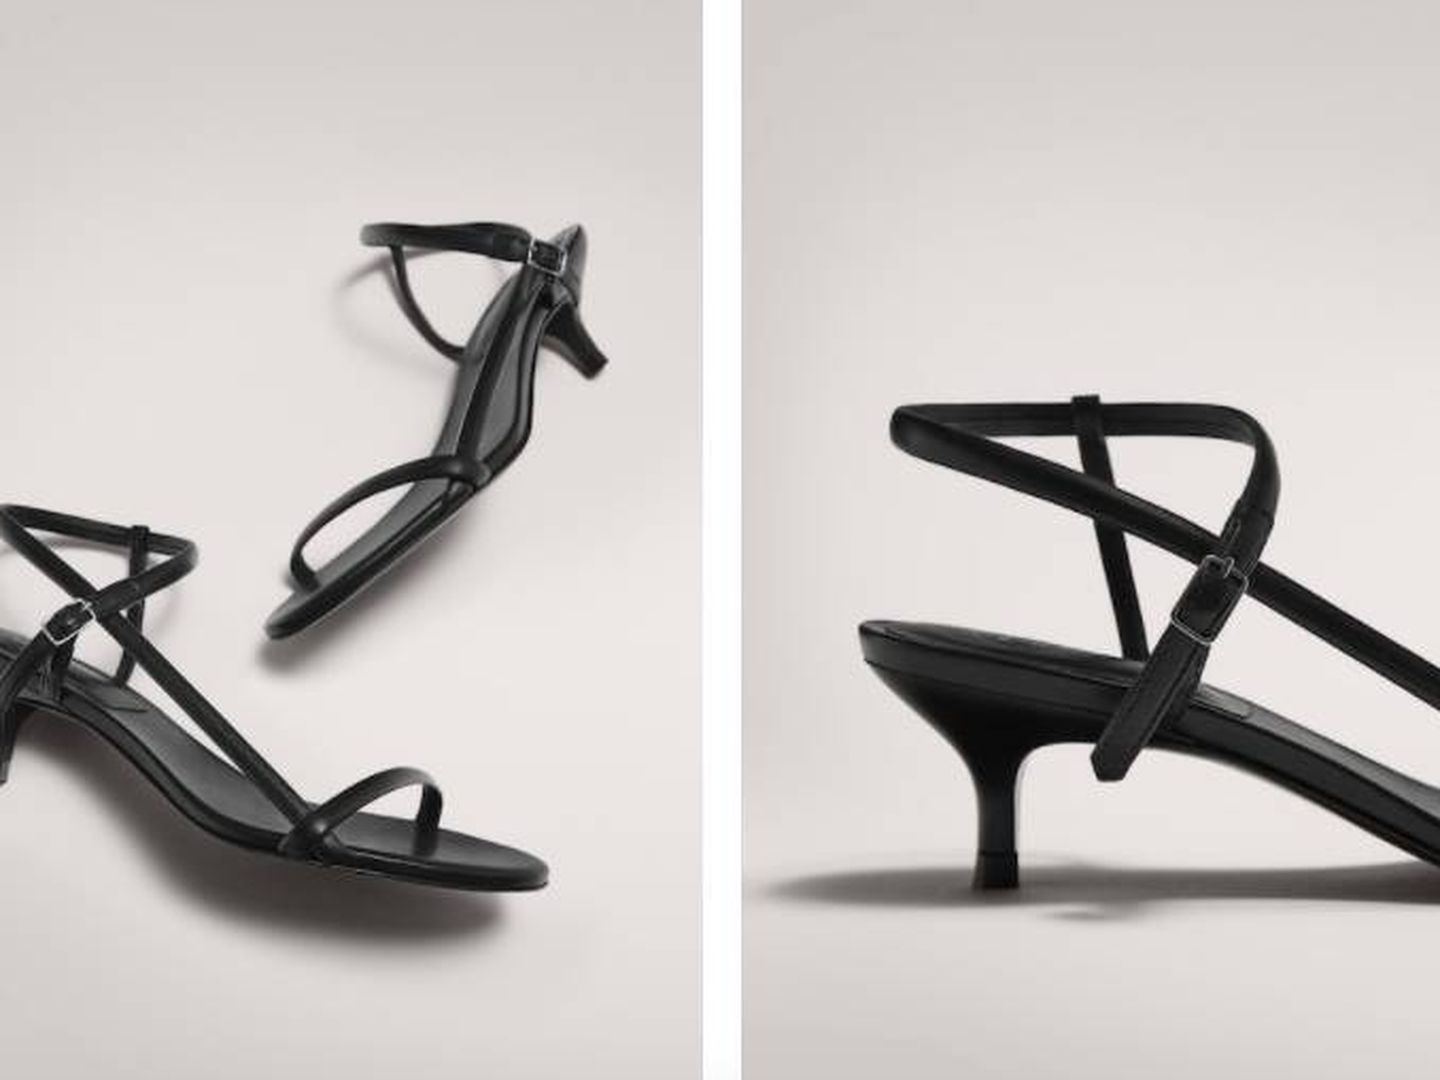 Sandalias de Massimo Dutti. (Cortesía)